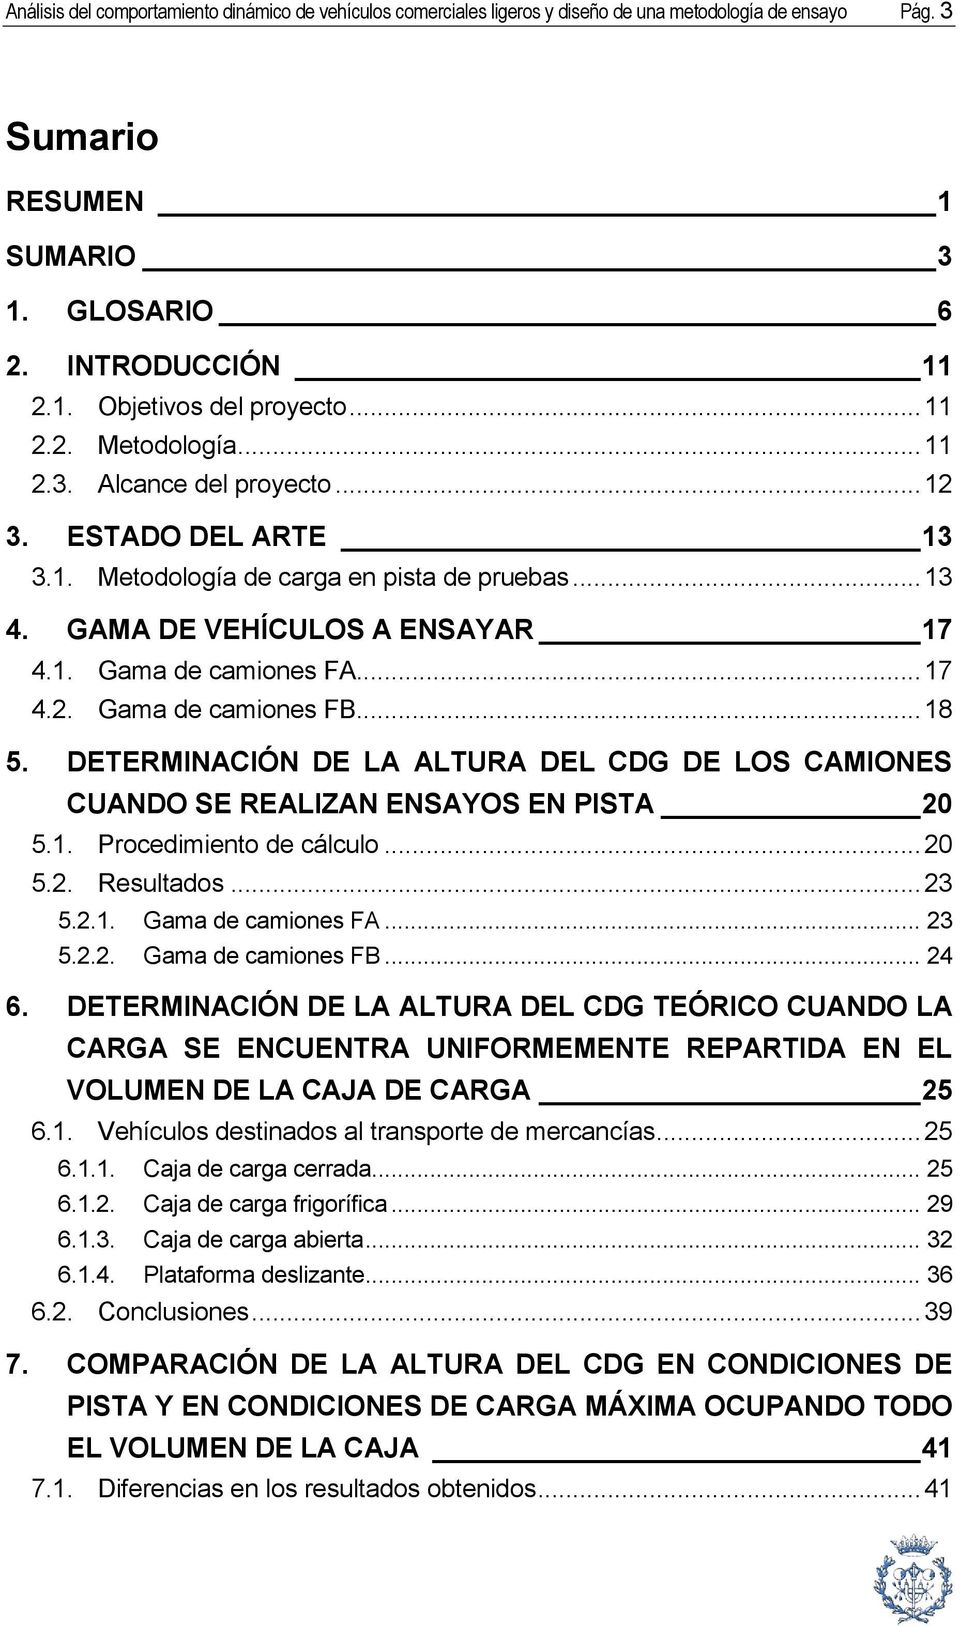 .. 18 5. DETERMINACIÓN DE LA ALTURA DEL CDG DE LOS CAMIONES CUANDO SE REALIZAN ENSAYOS EN PISTA 20 5.1. Procedimiento de cálculo... 20 5.2. Resultados... 23 5.2.1. Gama de camiones FA... 23 5.2.2. Gama de camiones FB.